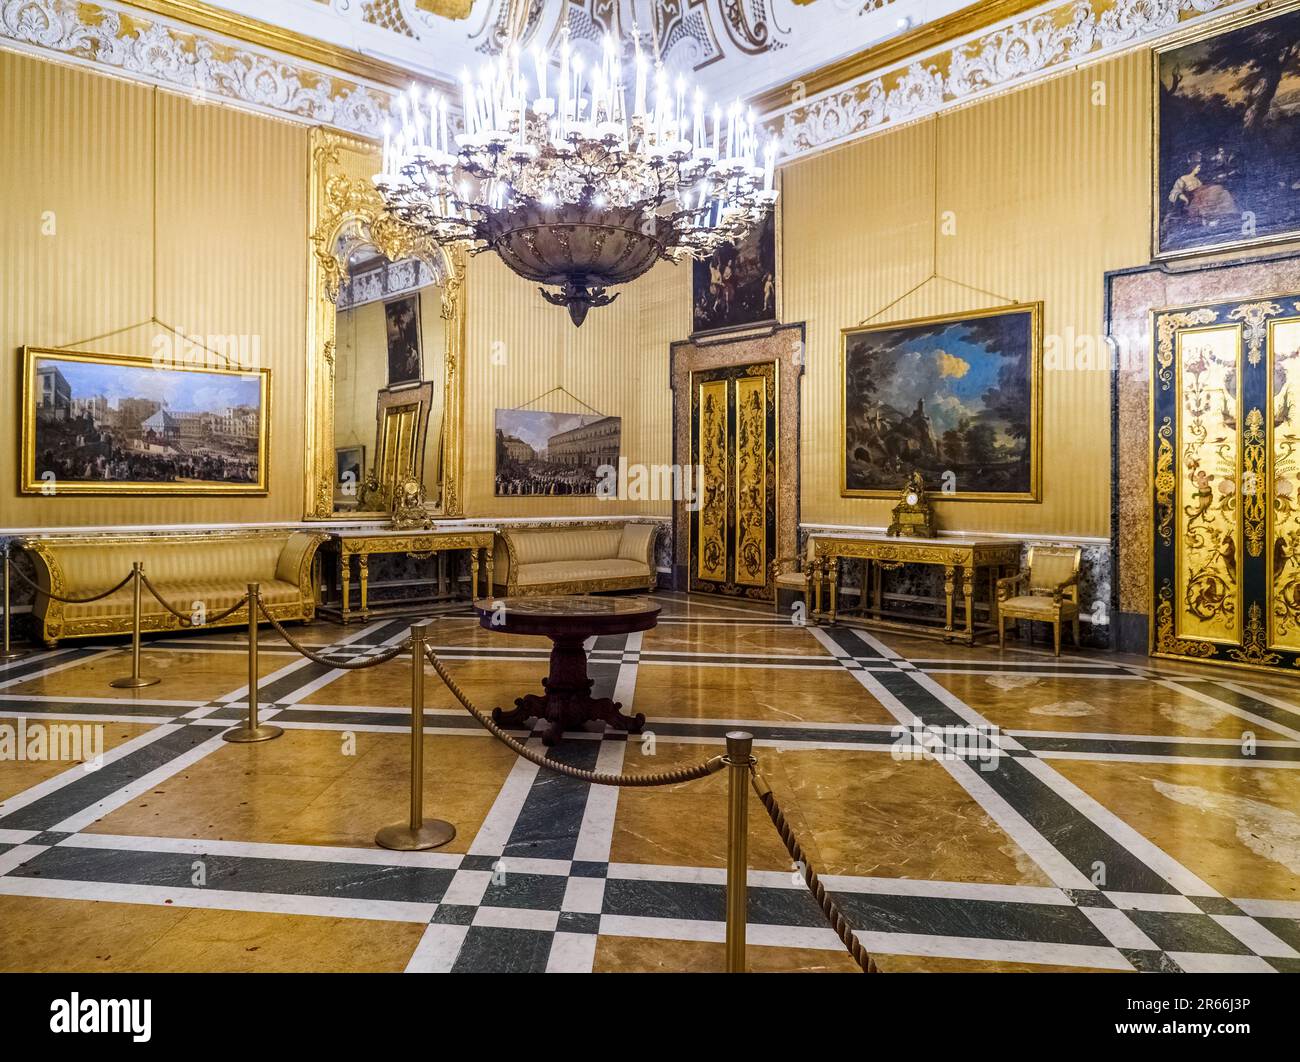 Das Zimmer der Königin mit seiner seltenen Rokoko-weißen und goldenen Stuckdecke und Gemälden der Neapolitans School aus dem 17. Bis 18. Jahrhundert - Königlicher Palast von Neapel, der 1734 zur königlichen Residenz der Bourbons wurde - Neapel, Italien Stockfoto